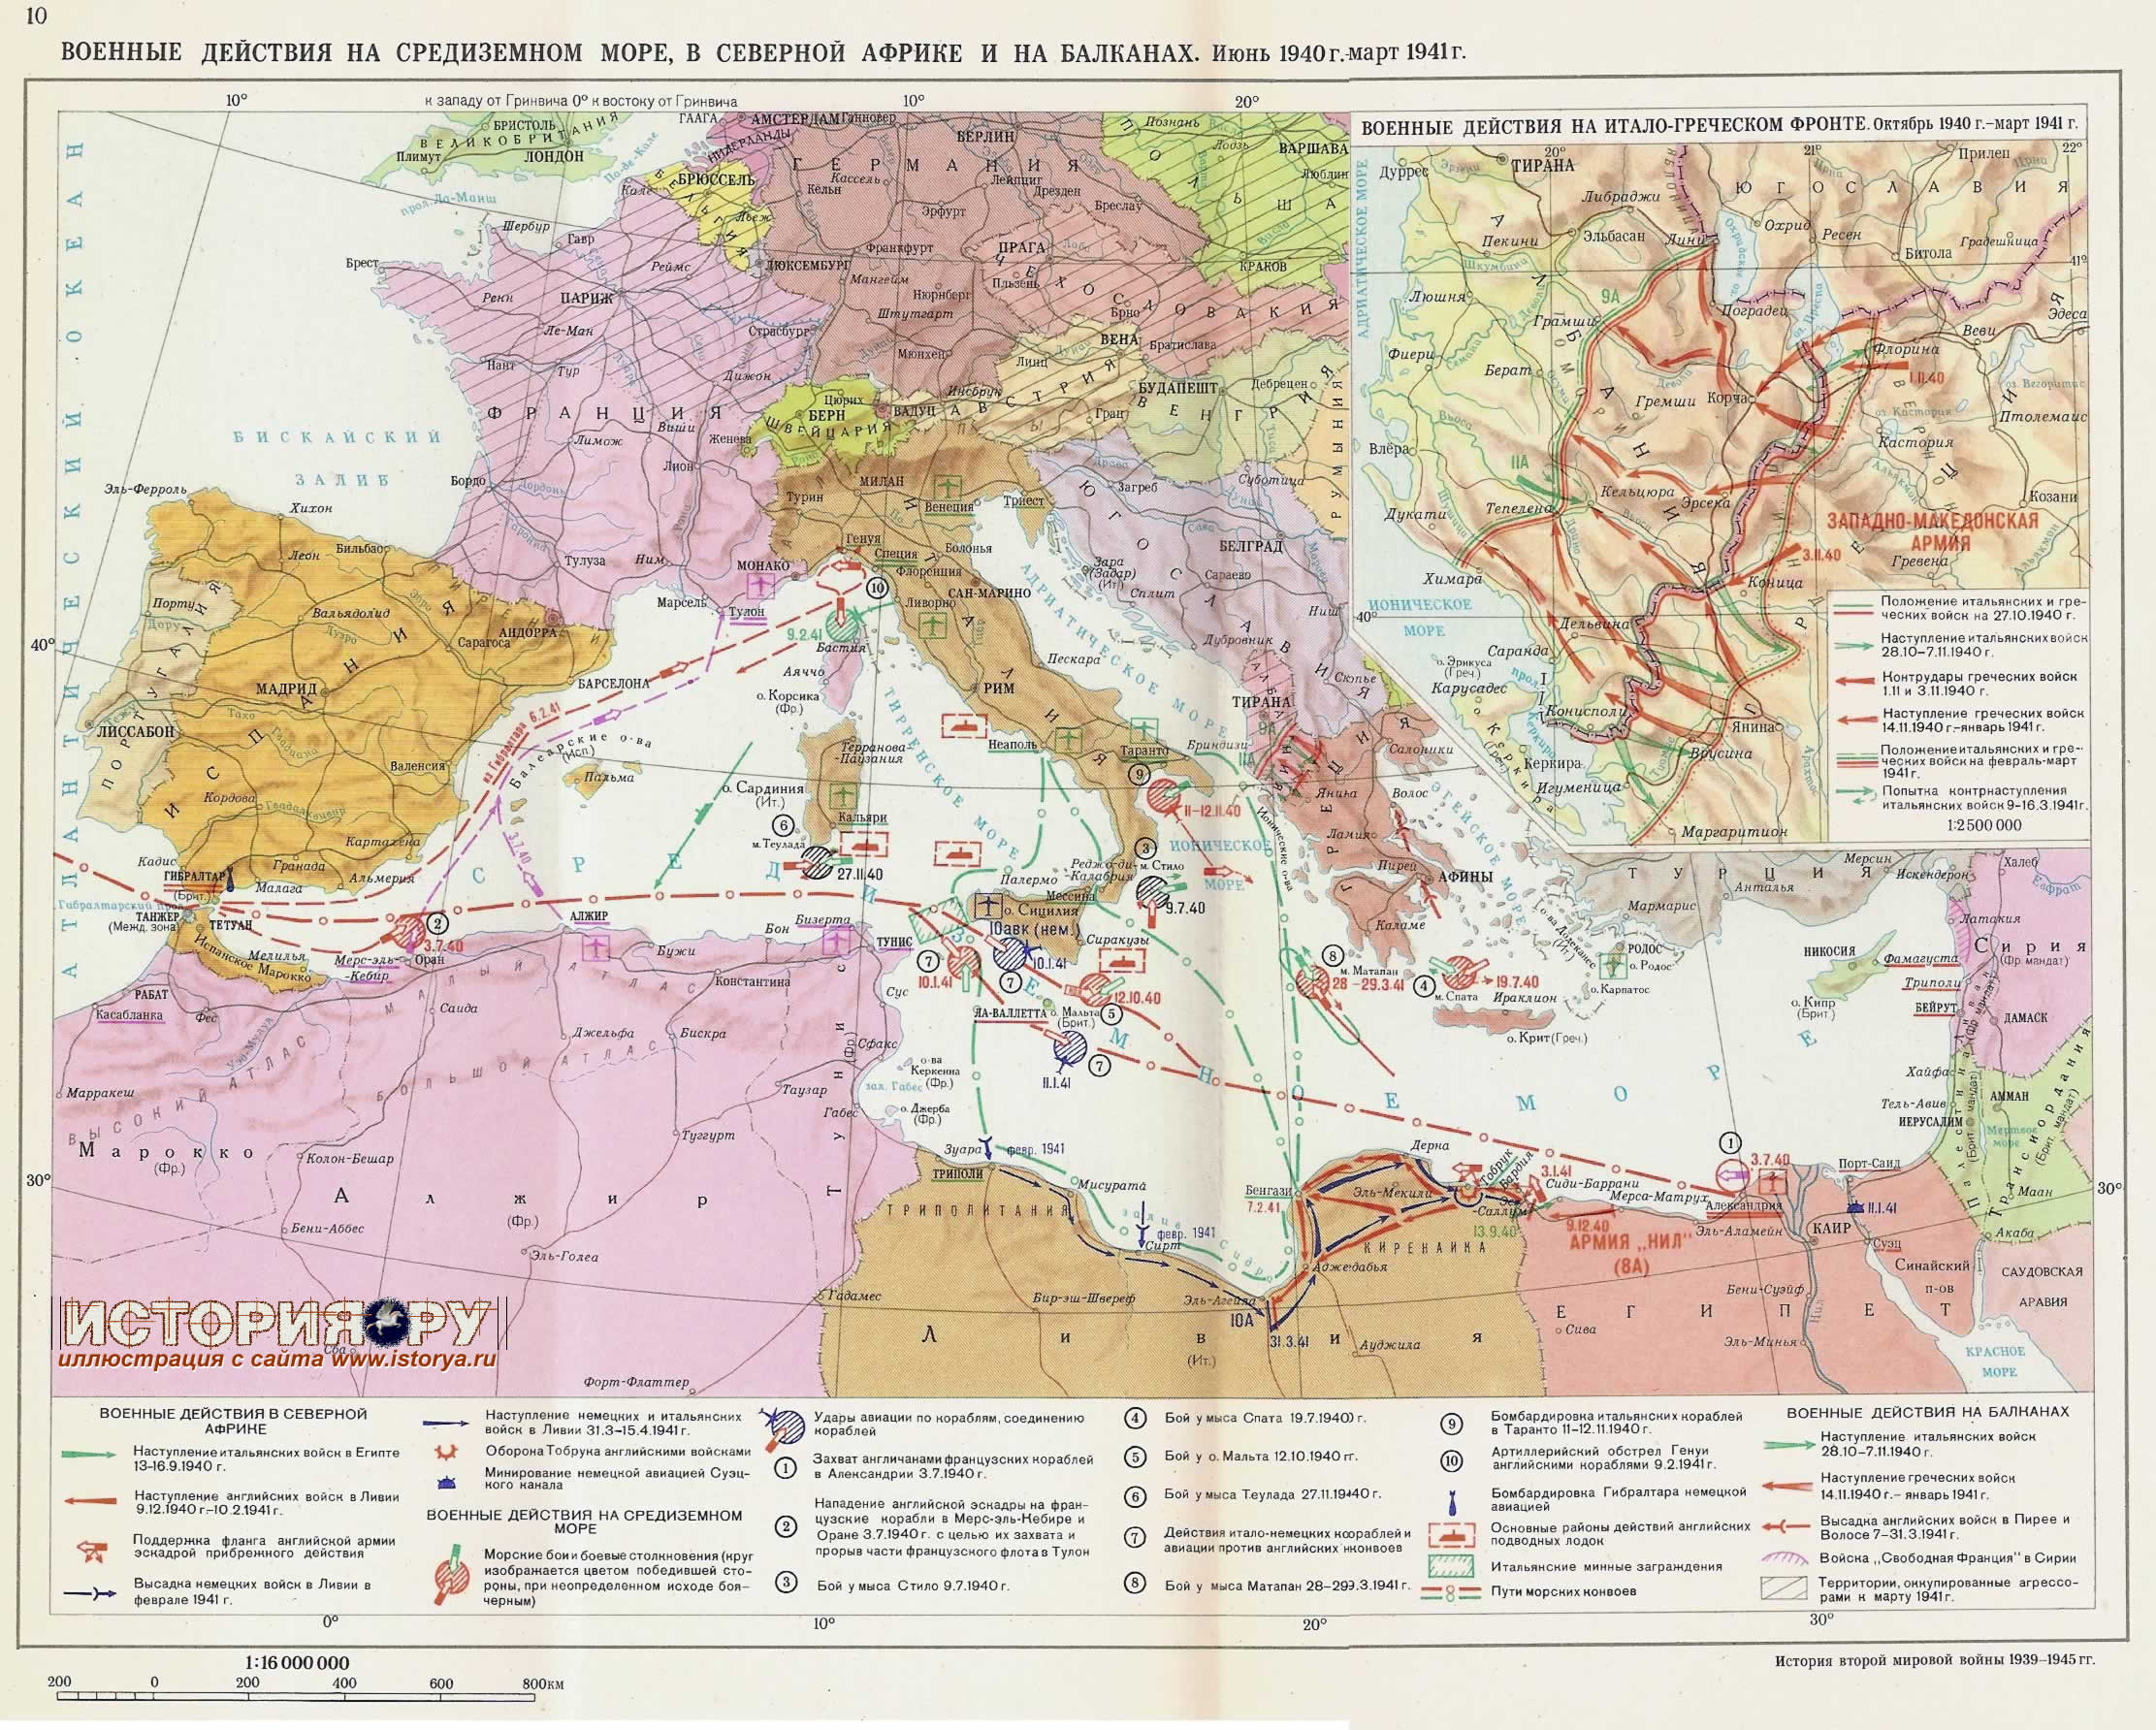 Военные действия на средиземном море, в северной африке и на балканах. Июнь 1940г. - март 1941г.